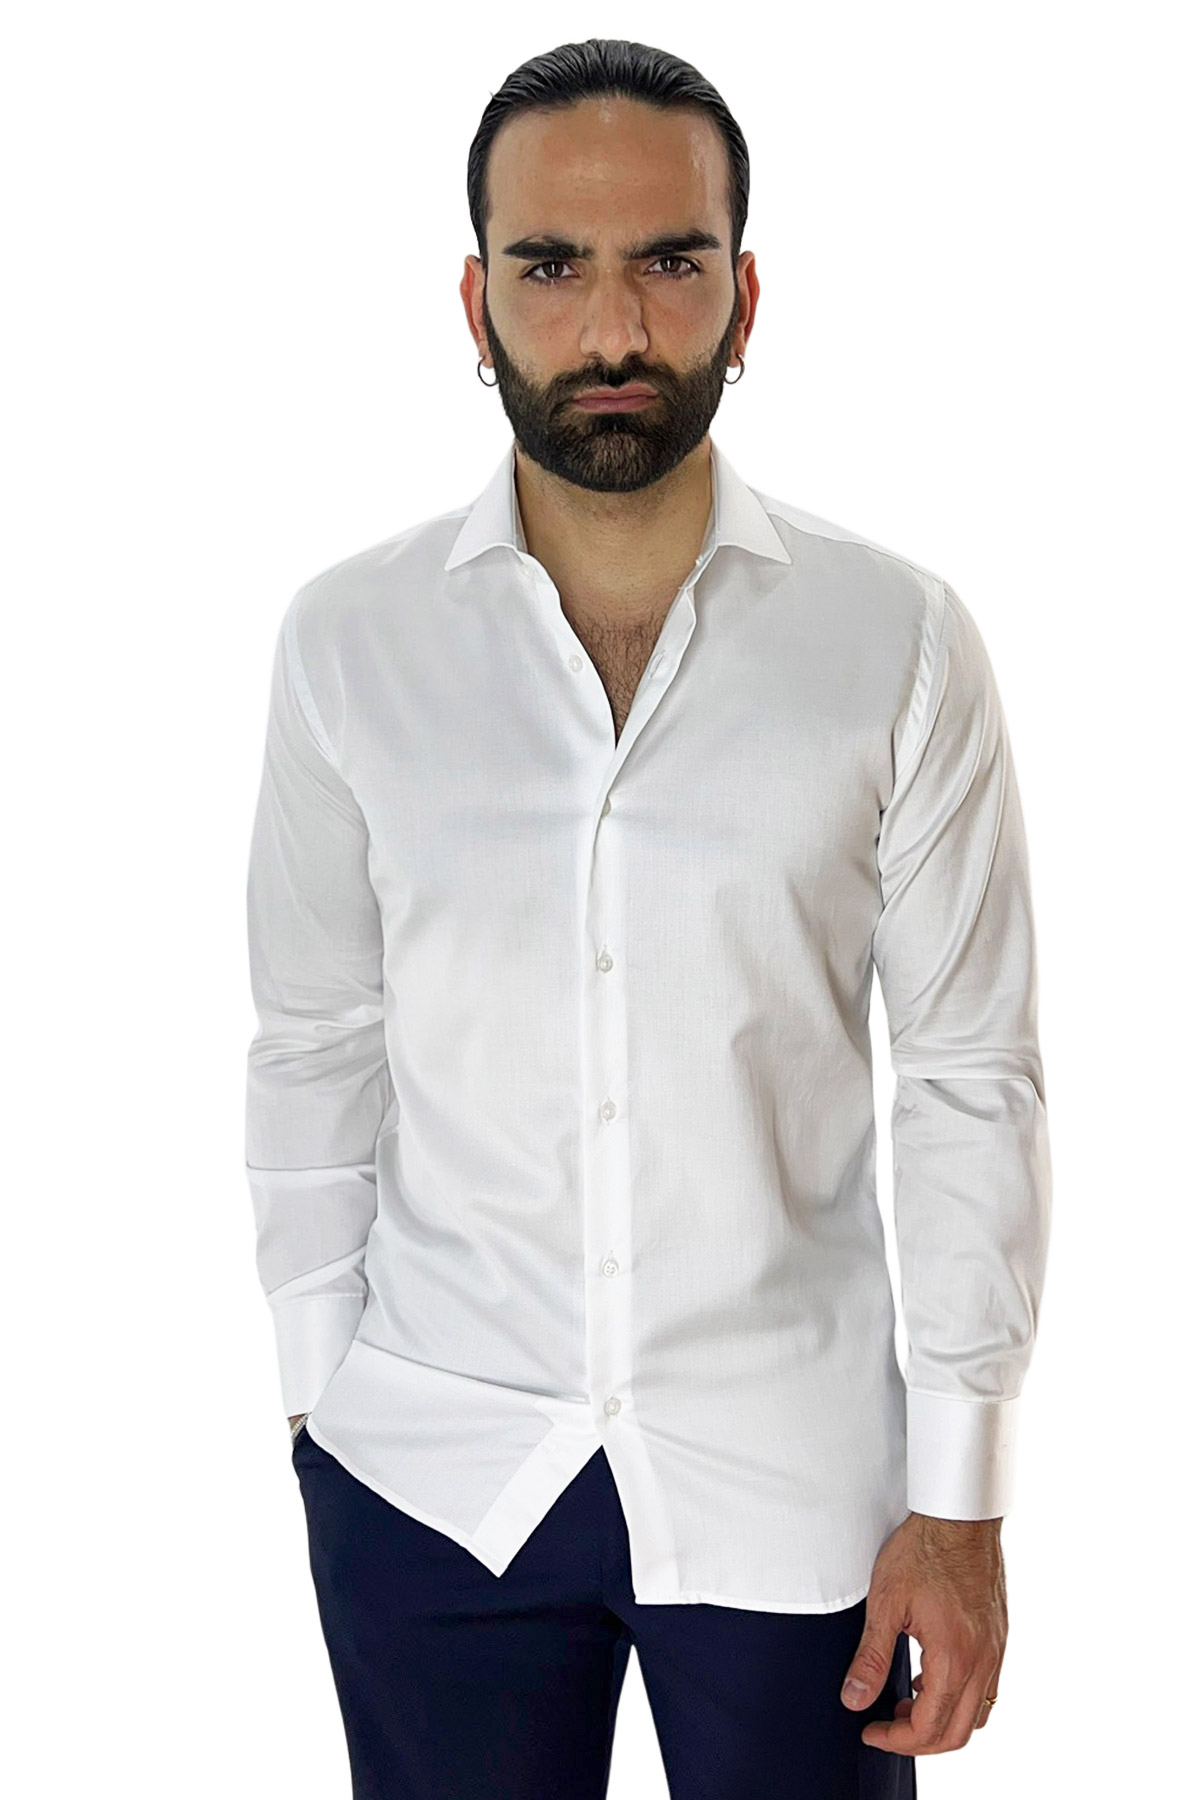 Camicia Uomo slim Fit 100% cotone Tinta unita collo semi francese